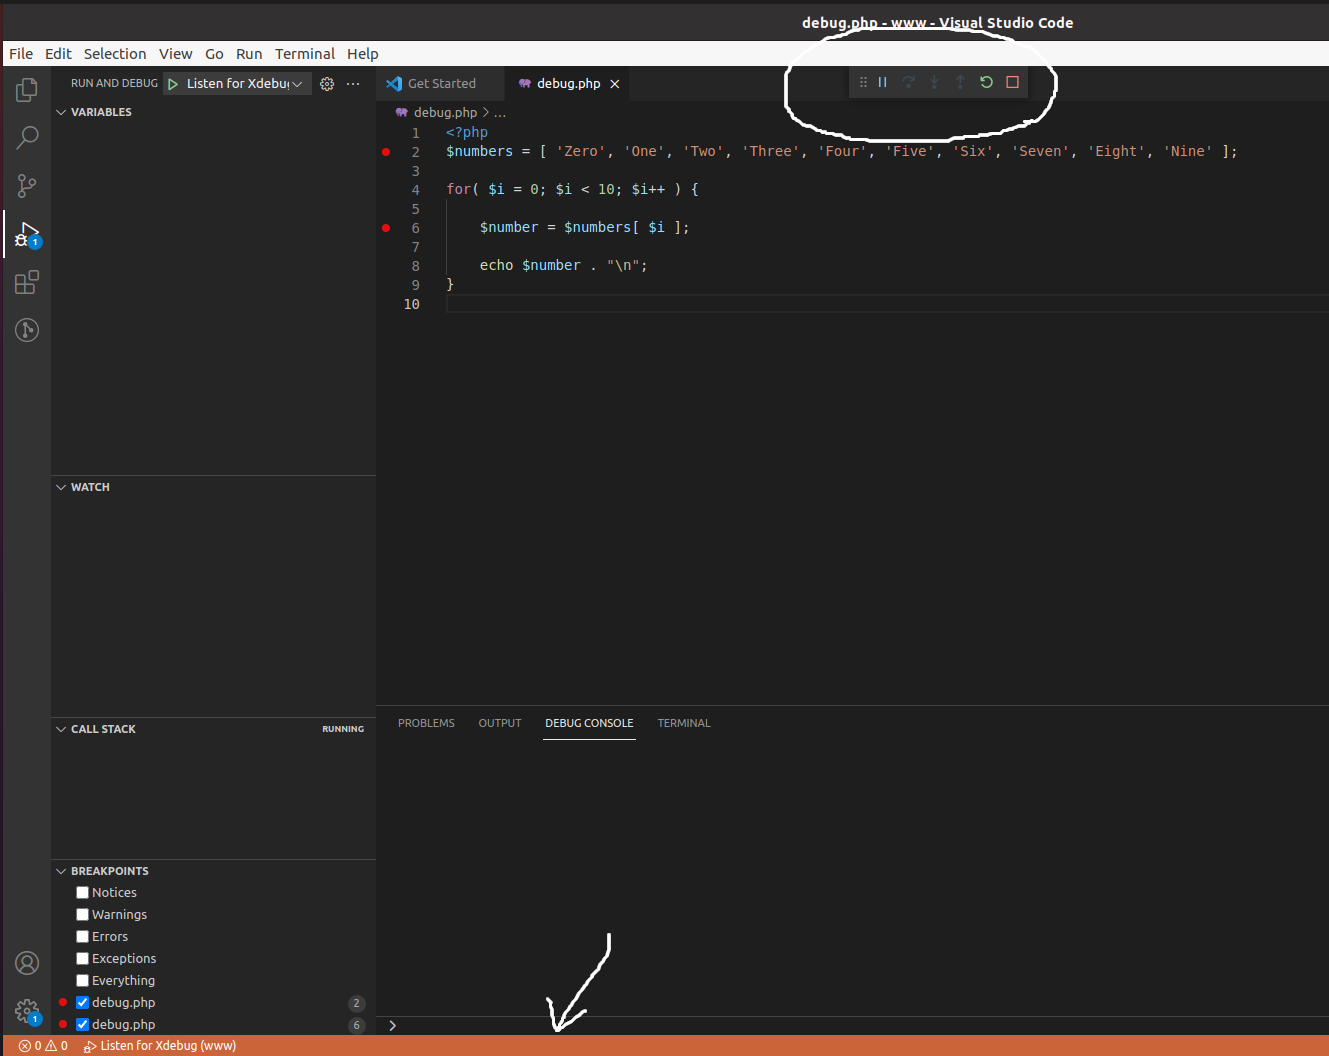 Debug PHP using Xdebug and Visual Studio Code on Ubuntu - VS Code - Debug Session